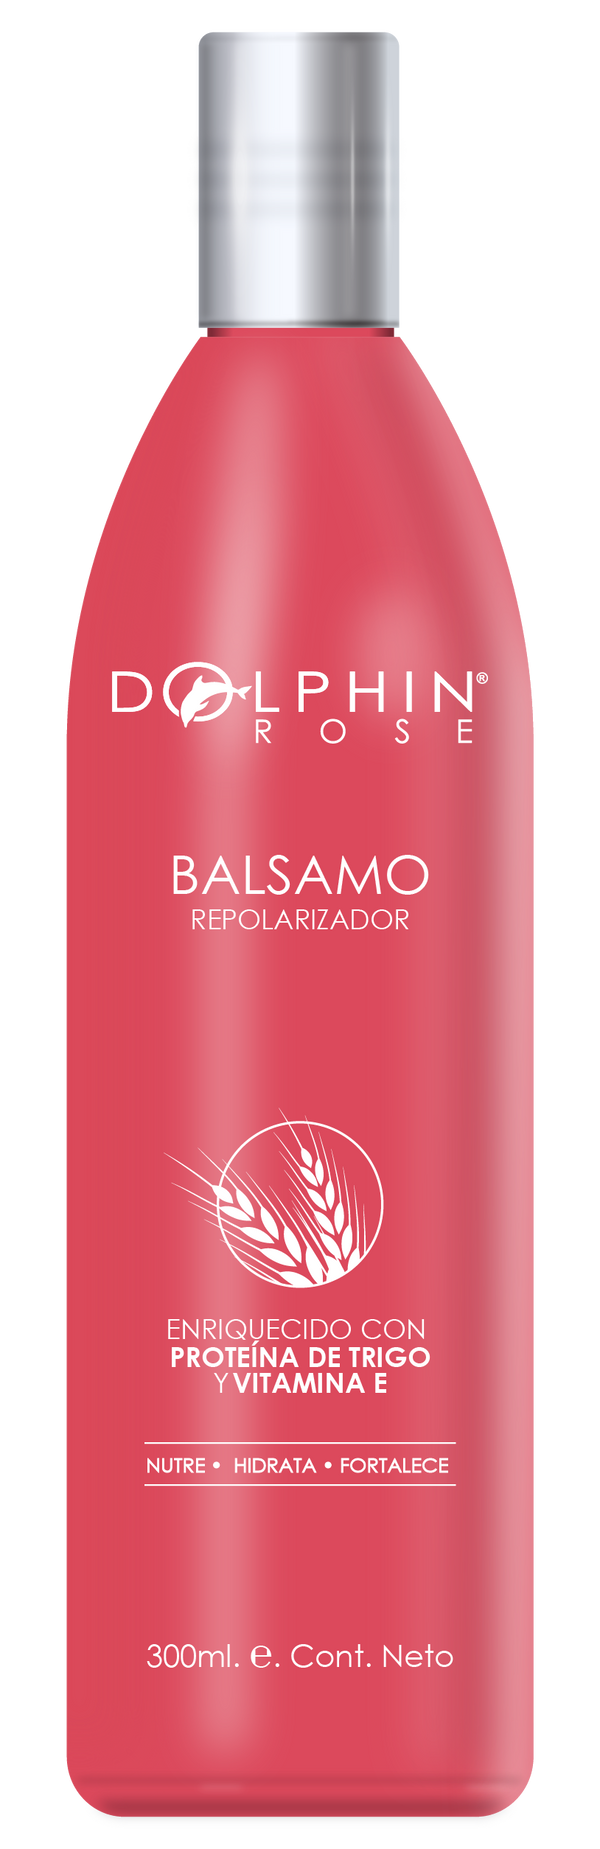 BALSAMO REPOLARIZADOR - 300 ML - DOLPHIN ROSE